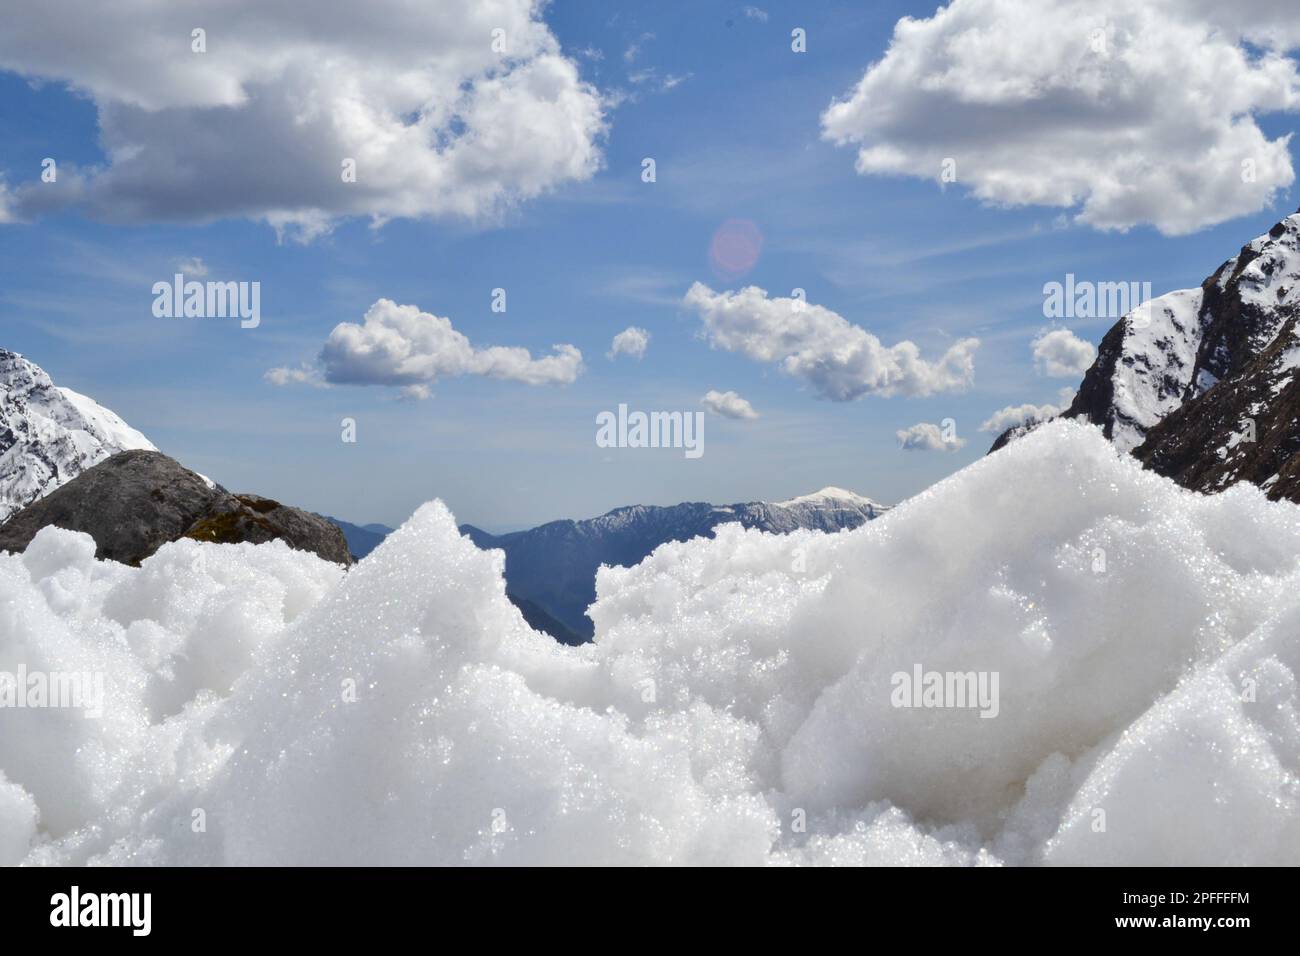 Schnee wie Baumwolle im Himalaya Uttarakhand Indien. Der Himalaya ist eine Bergkette in Asien, die die Ebenen des indischen Subkontinens trennt Stockfoto